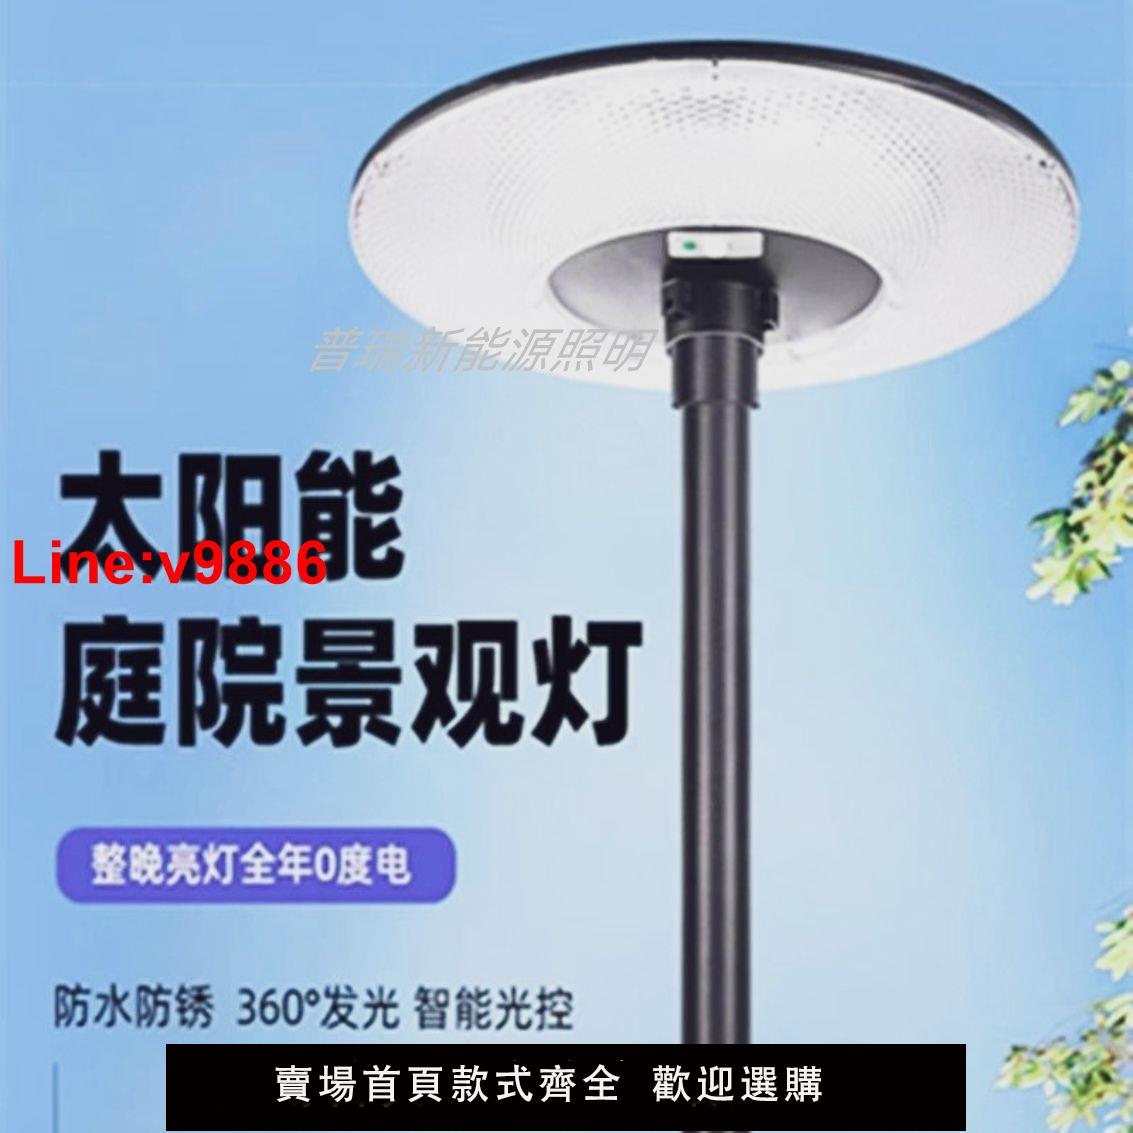 【台灣公司 超低價】新款太陽能飛碟燈可移動感應家用防水一體庭院燈落地旋轉景觀燈